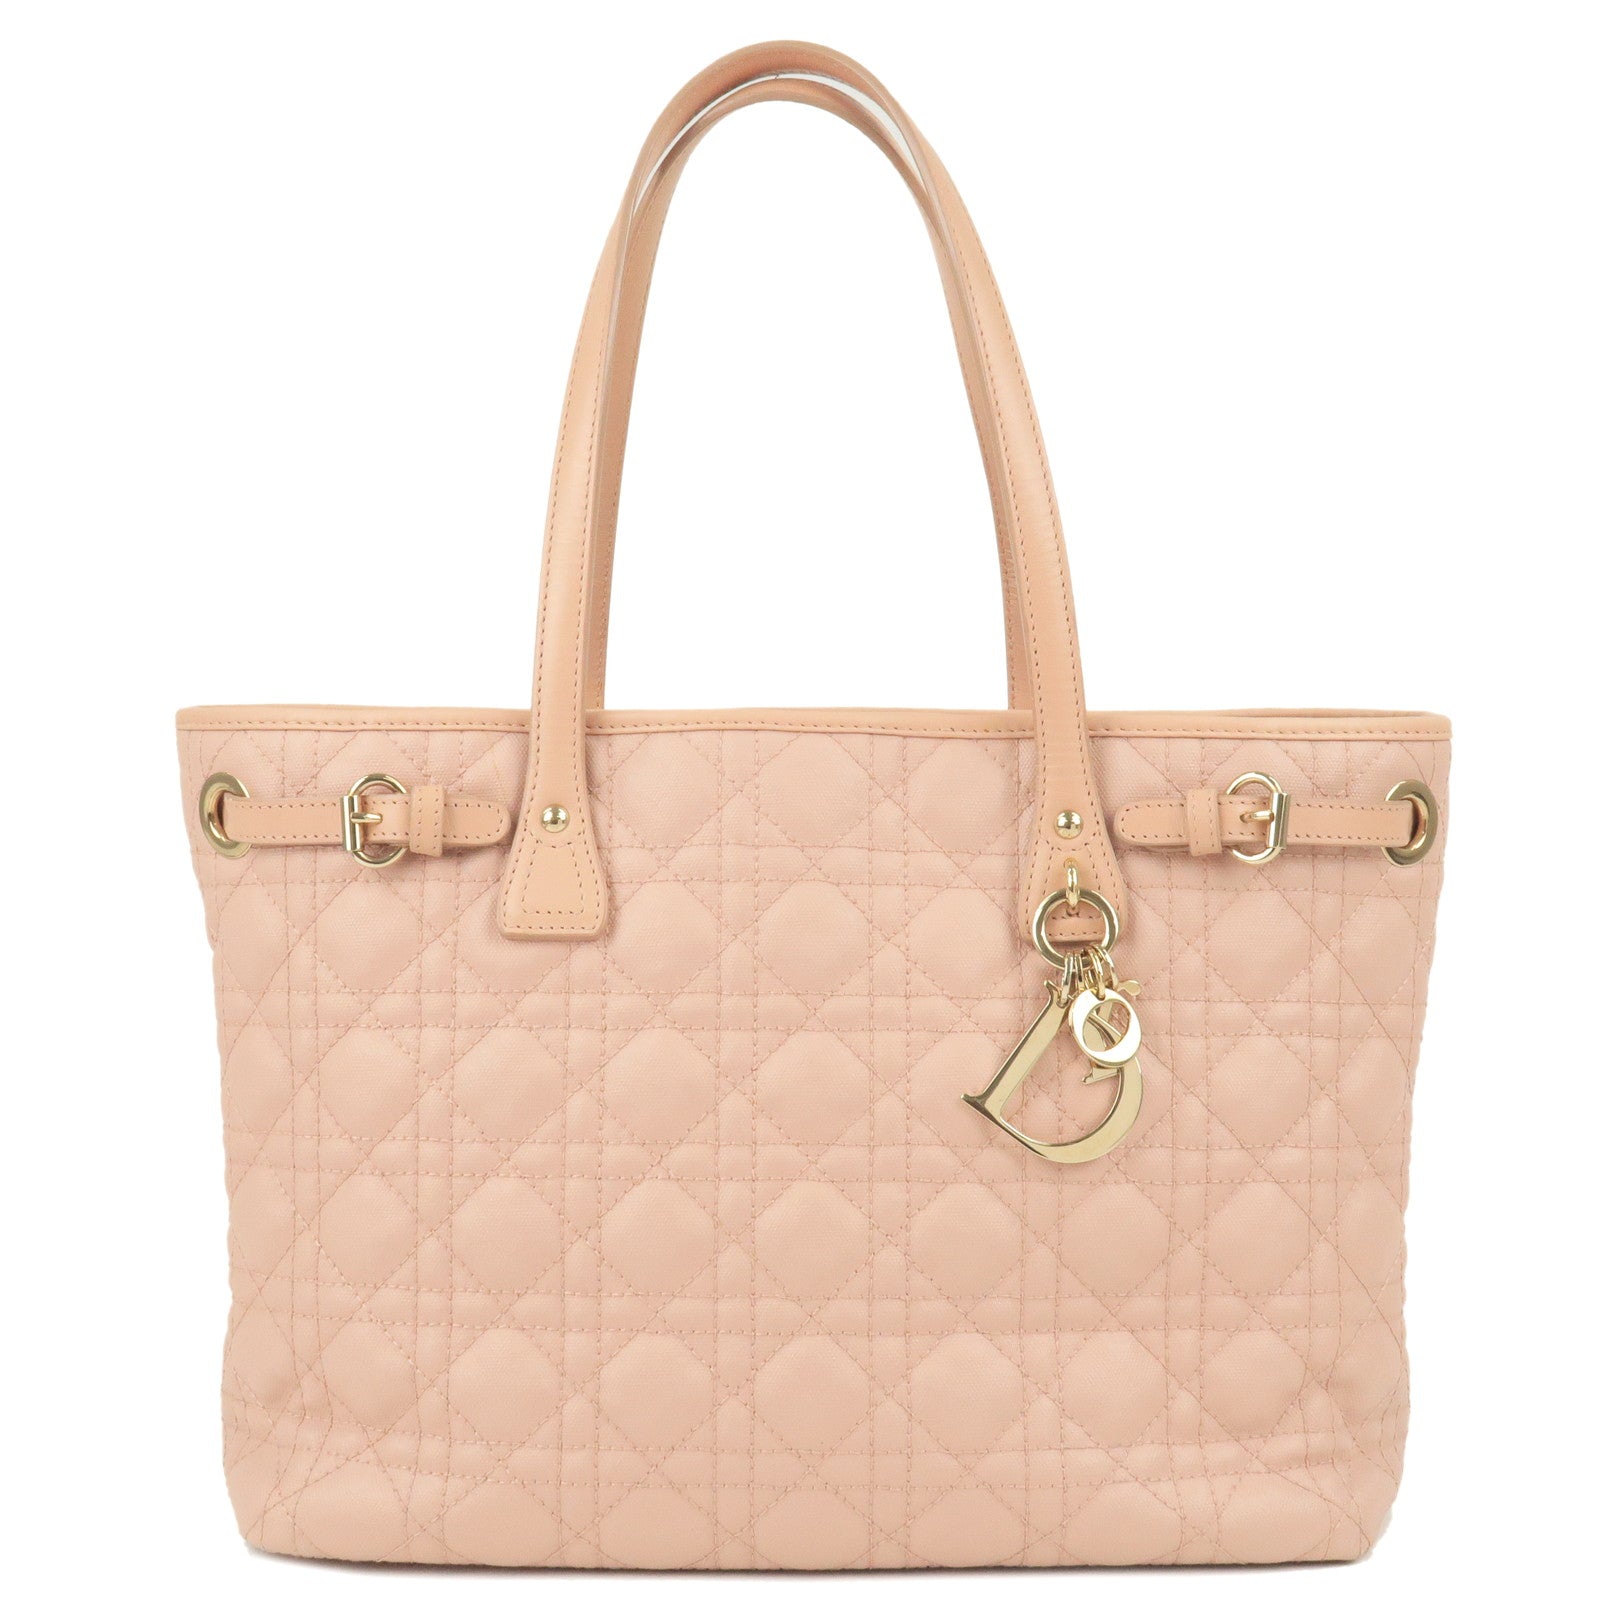 Christian Dior Cannage Panarea Tote Bag Shoulder Bag Pink Used